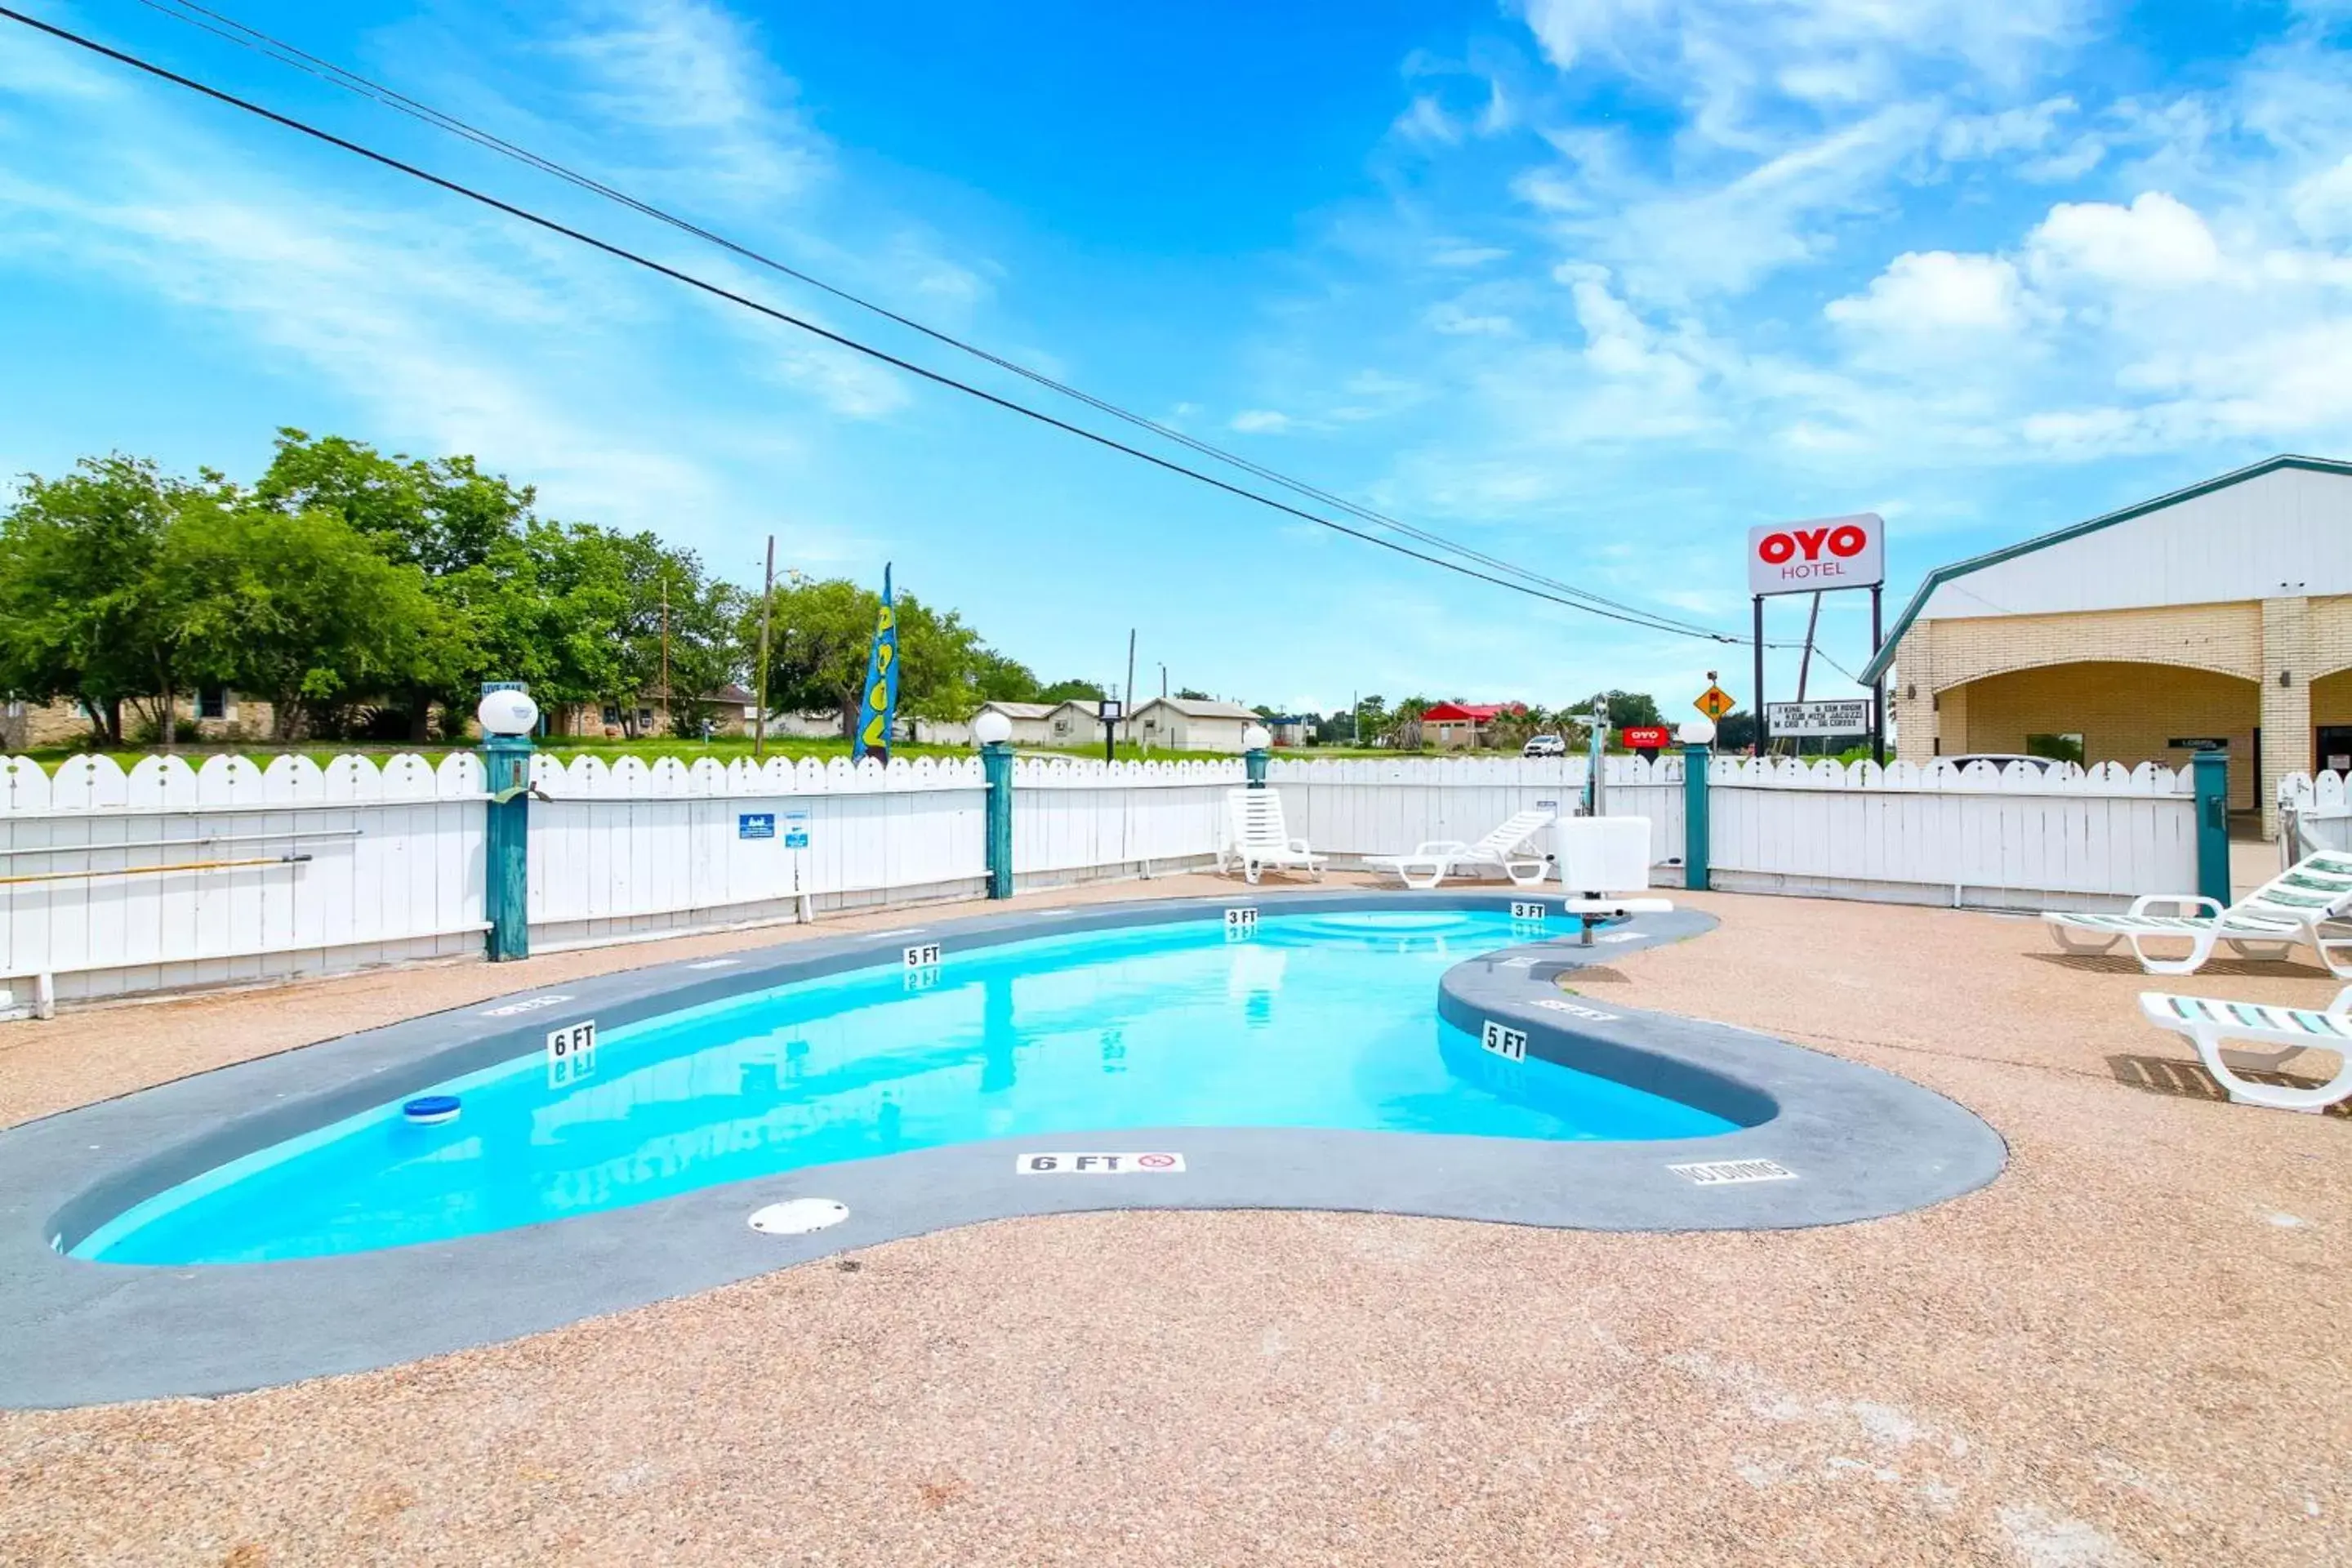 Swimming Pool in OYO Hotel Three Rivers TX US-281